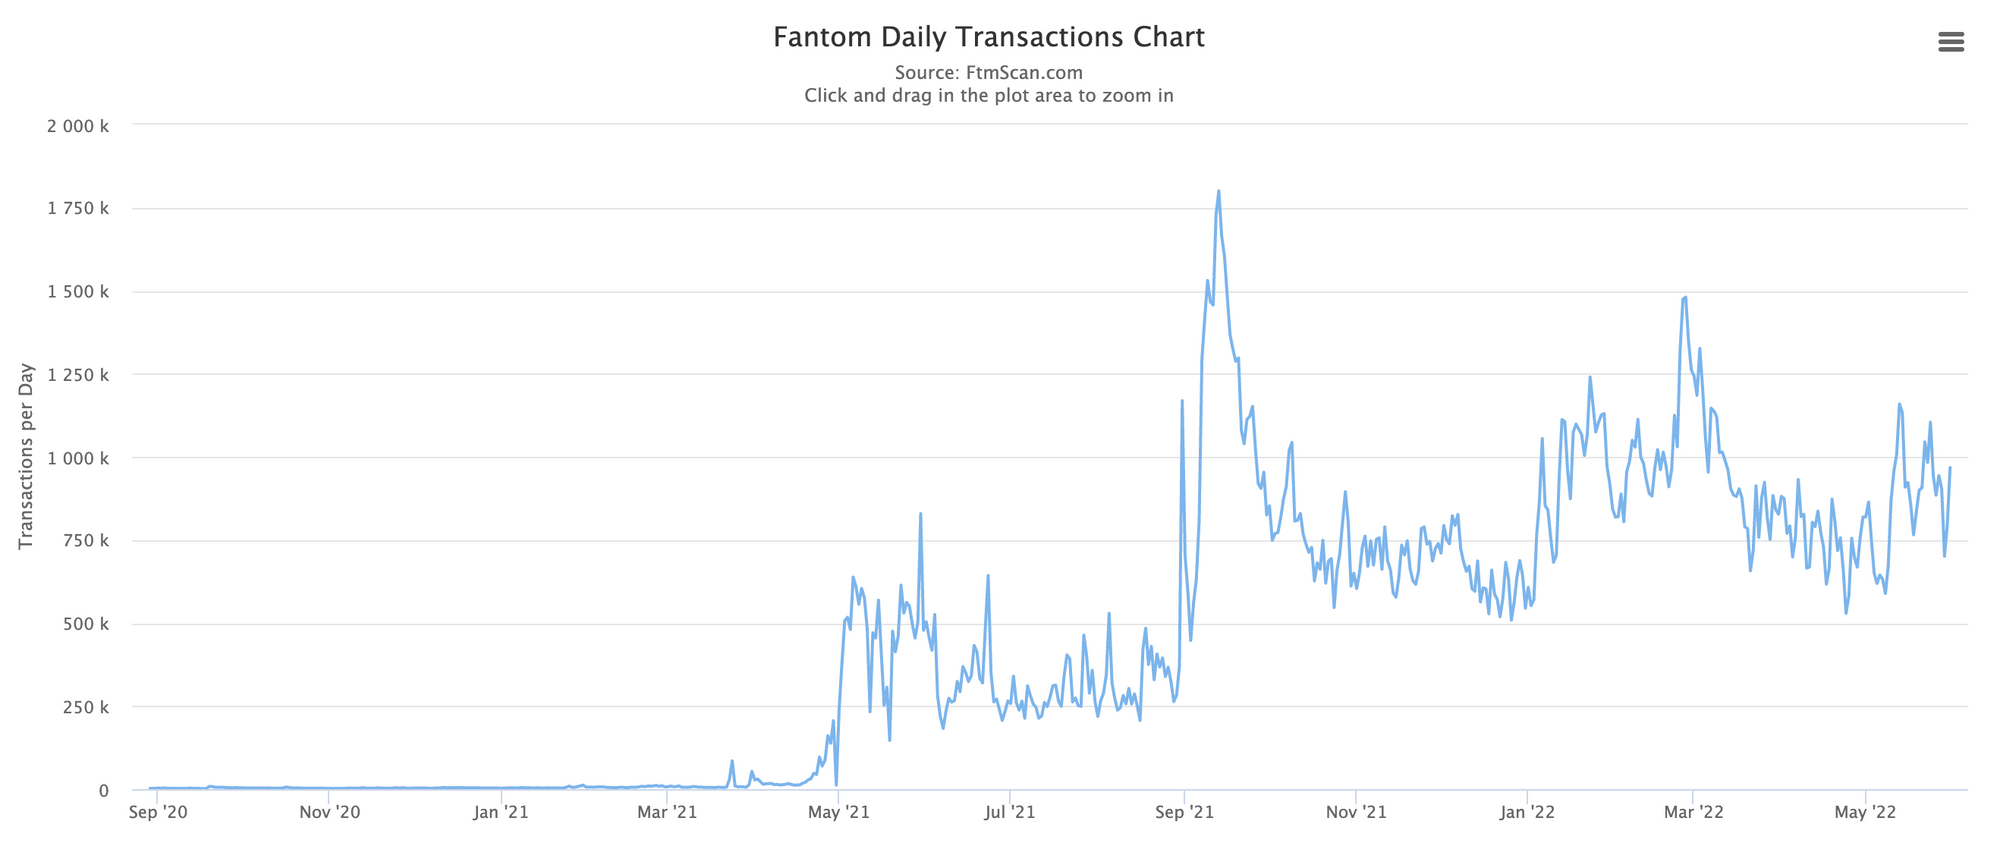 Transactions on Fantom